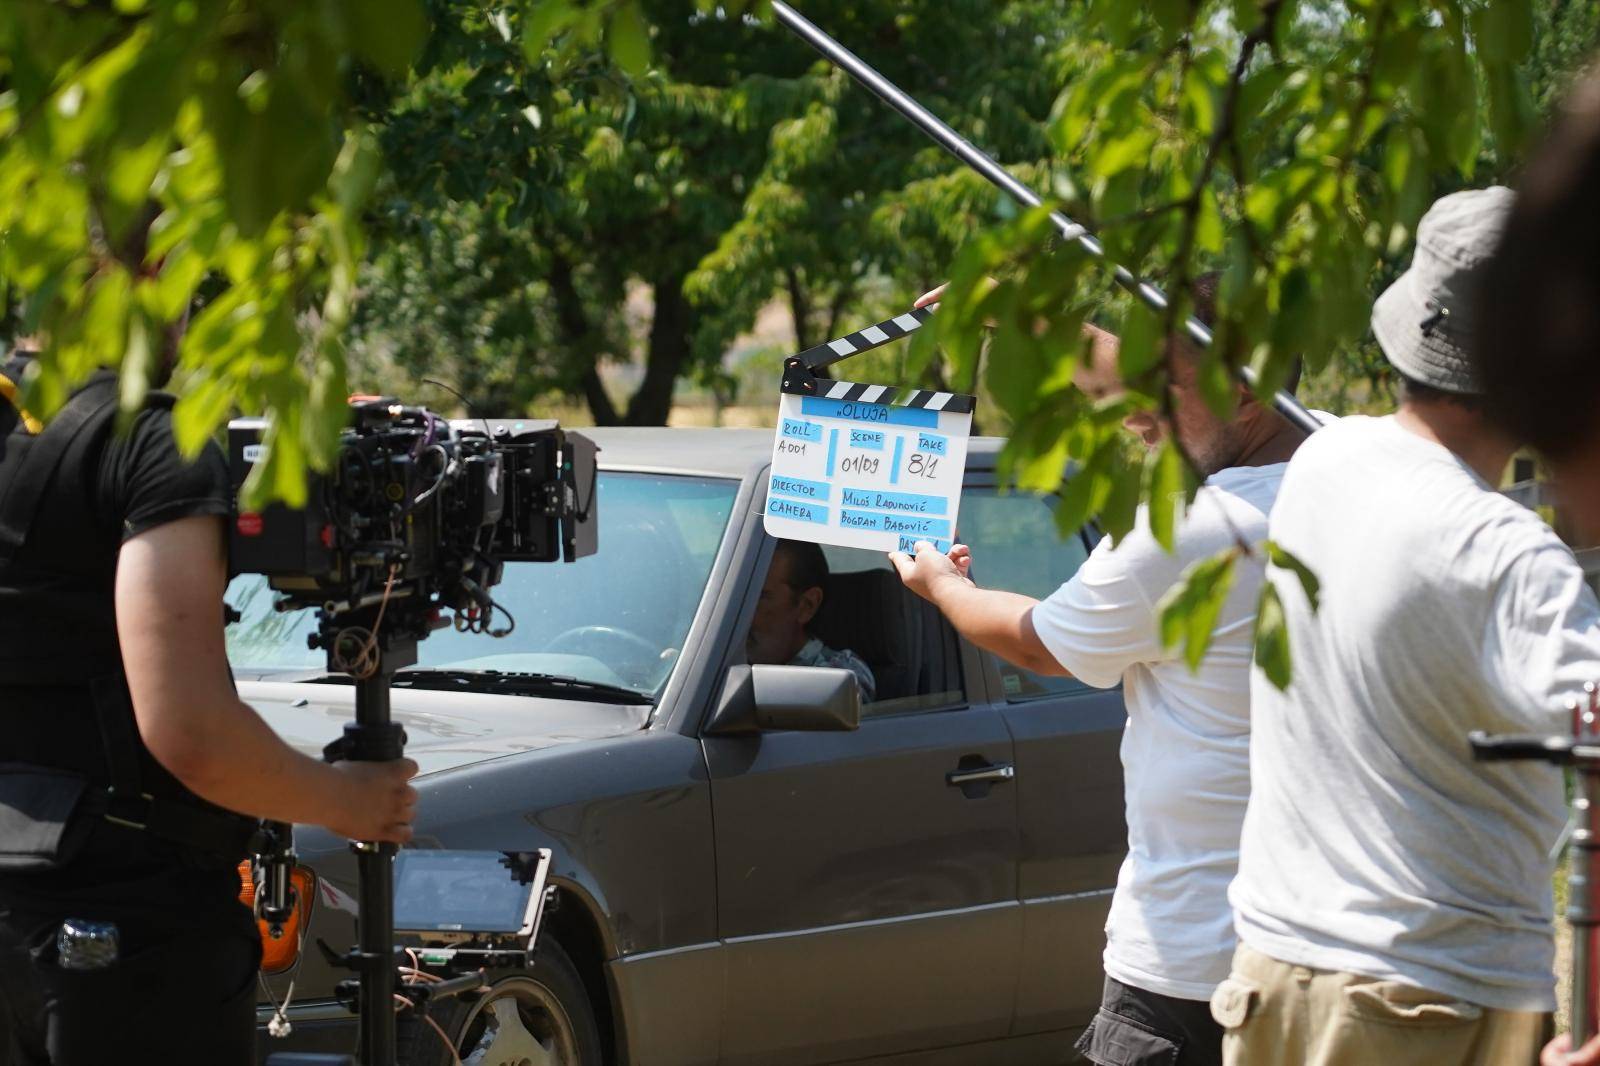 Filming of the film and series "Storm", directed and written by Milos Radunovic, has begun in Pambukovica near Valjevo.

U  Pambukovici kod Valjeva  pocelo je snimanja filma i serije "Oluja", reditelja i autora scenarija Milosa Radunovica.